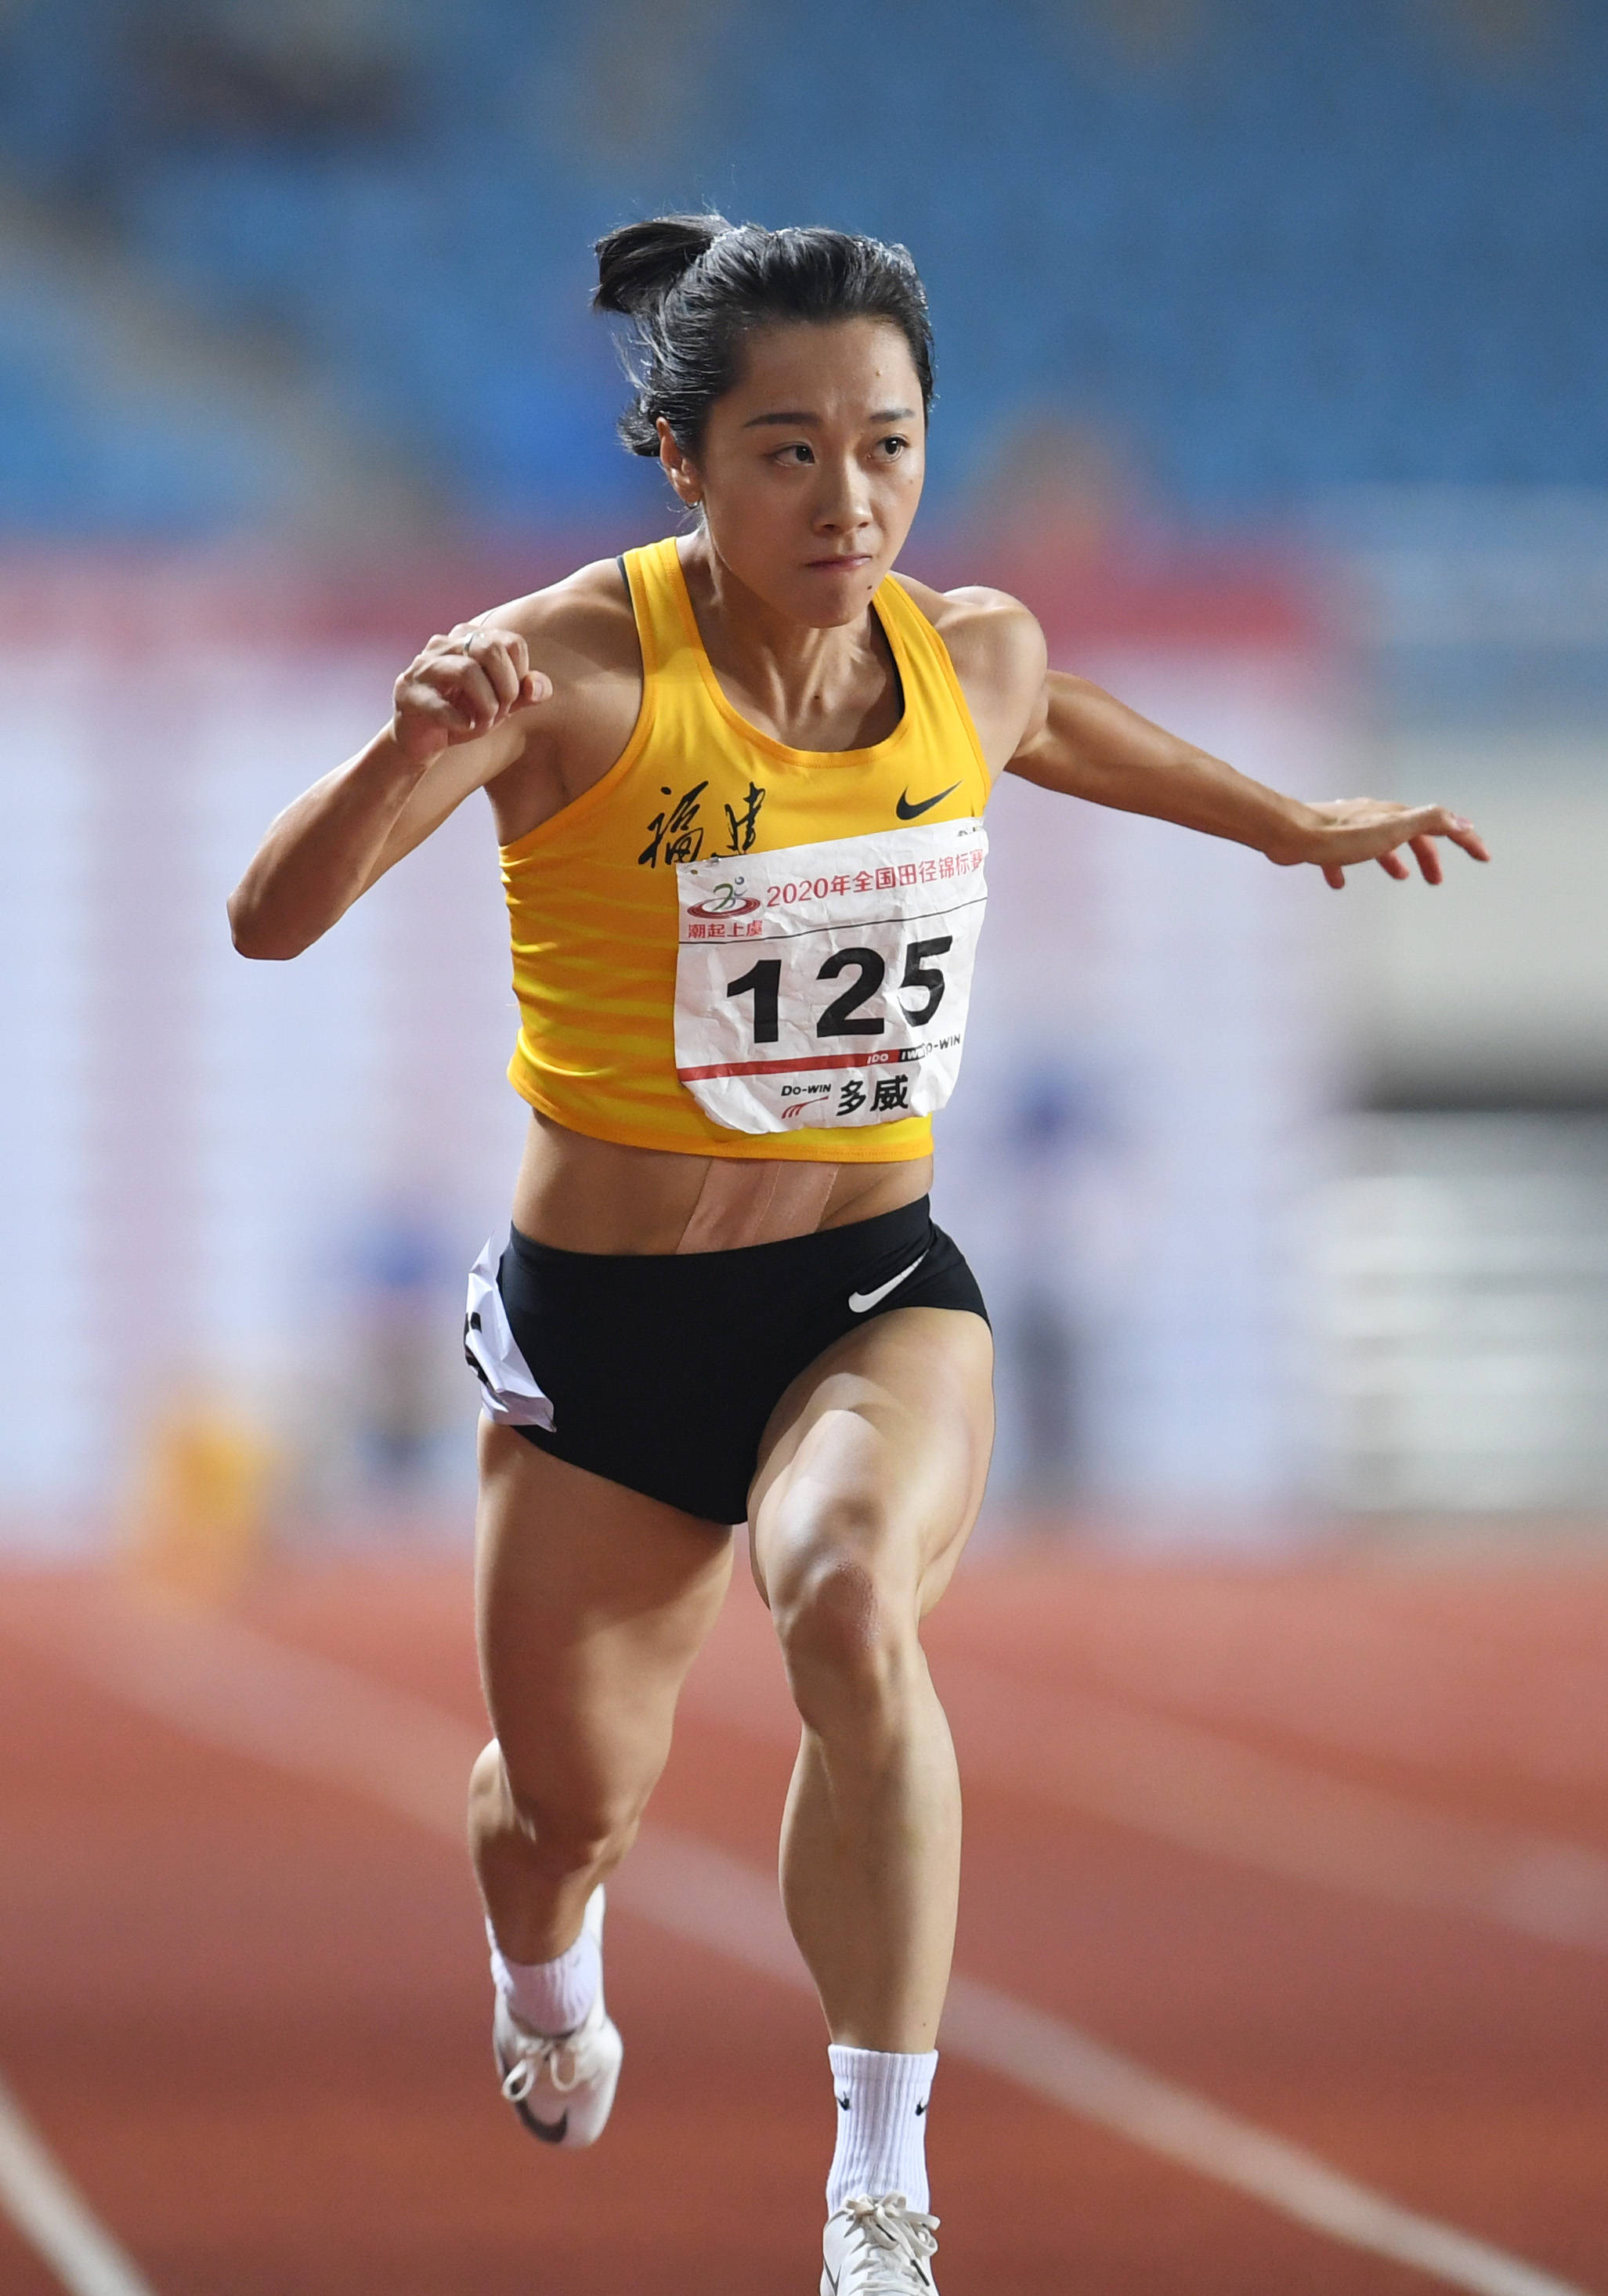 亚军湖南队选手廖孟雪(左)和季军黑龙江队选手孔令微在女子100米决赛